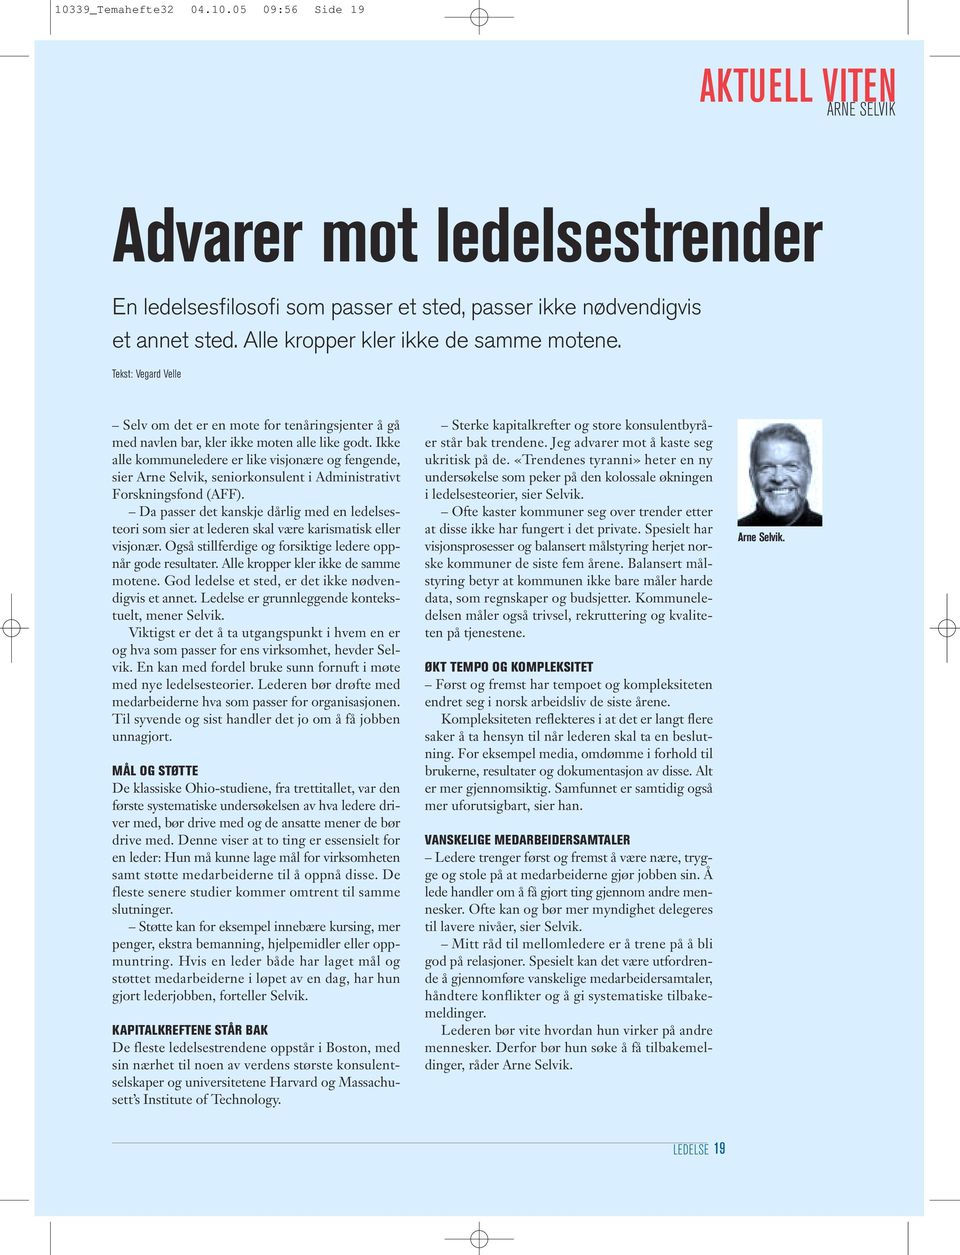 Ikke alle kommuneledere er like visjonære og fengende, sier Arne Selvik, seniorkonsulent i Administrativt Forskningsfond (AFF).